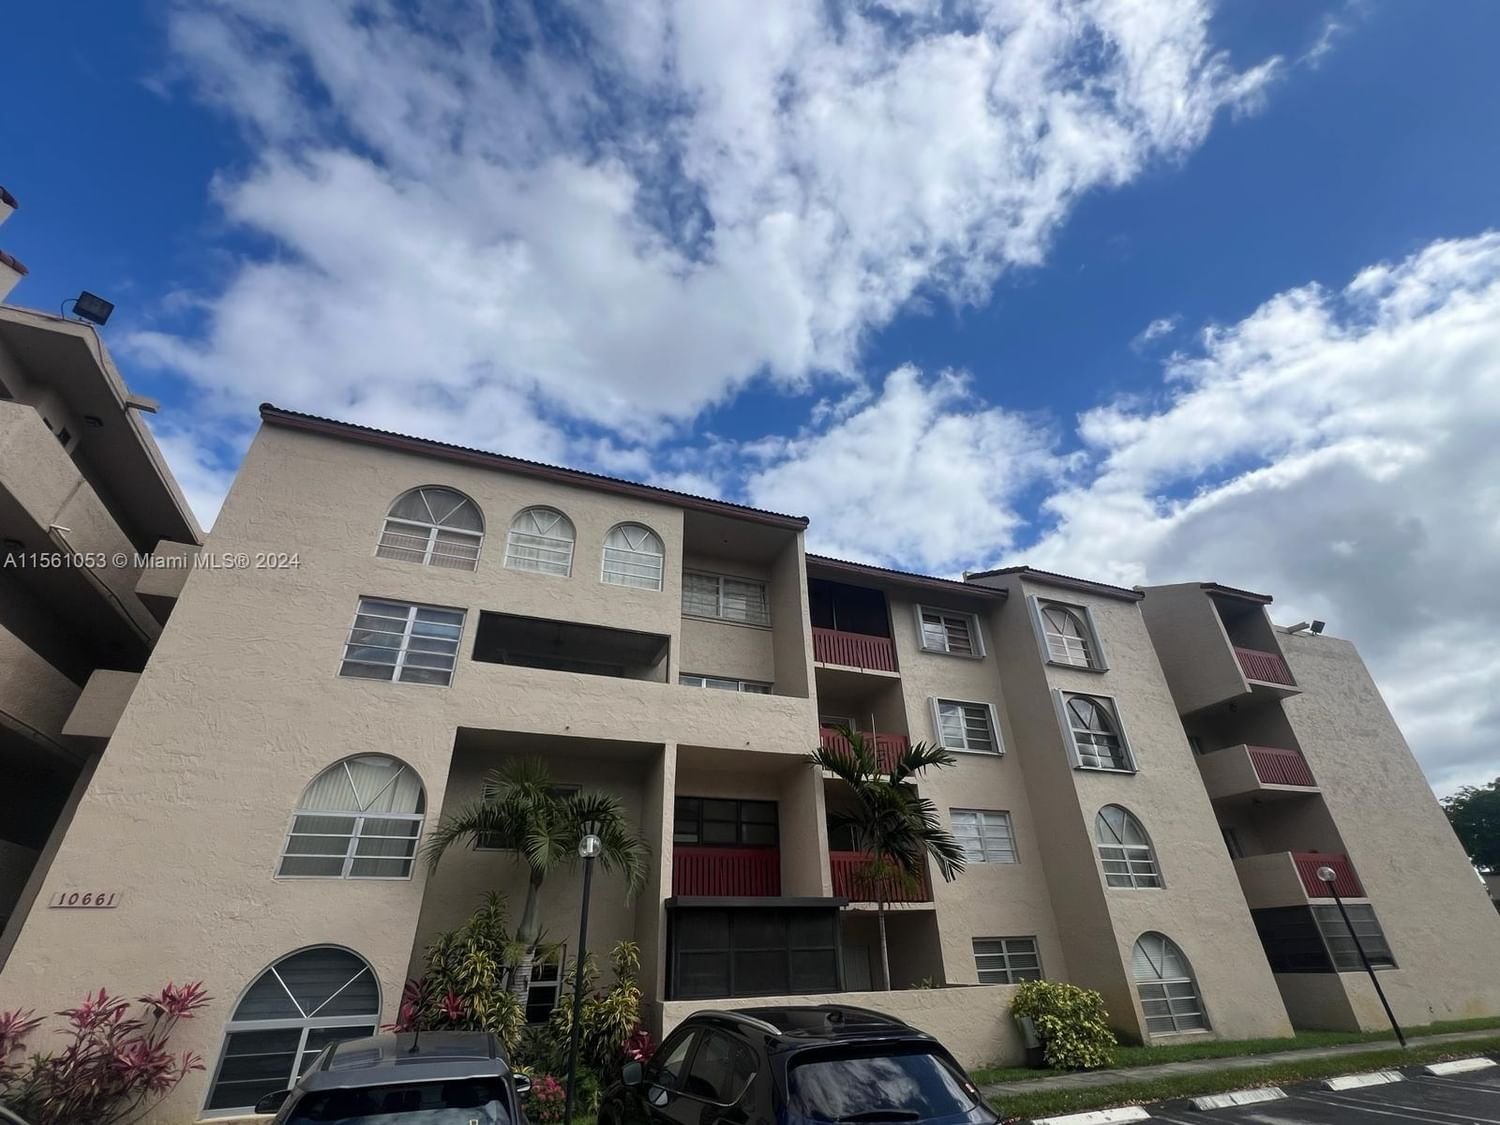 Real estate property located at 10661 108th Ave #3I, Miami-Dade County, THE PRADO CONDO, Miami, FL